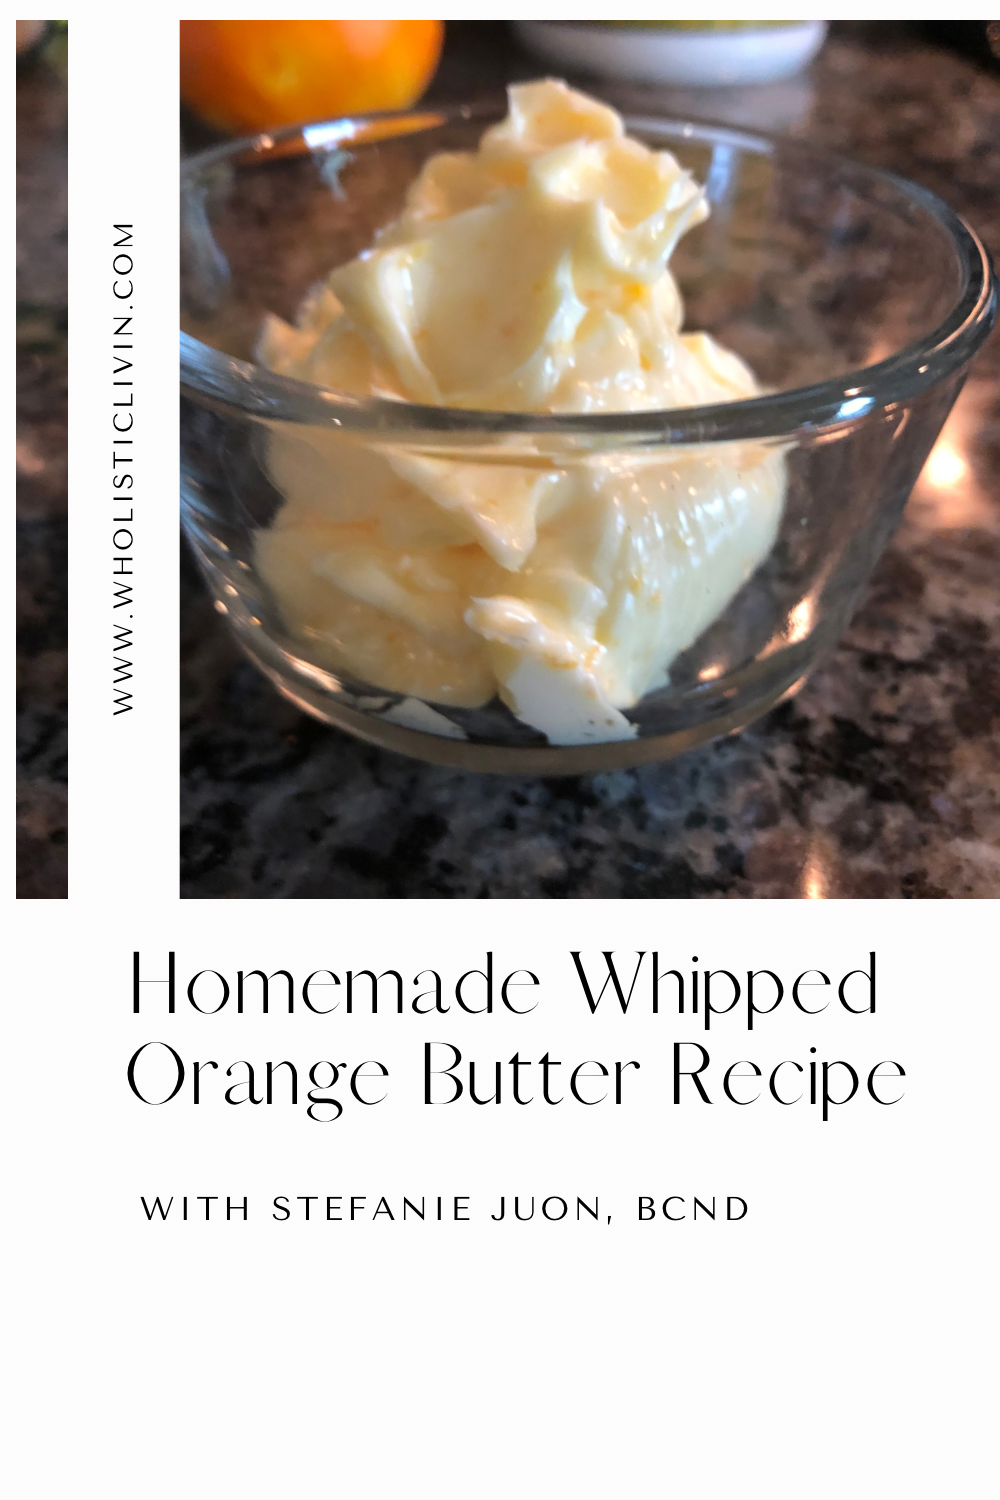 Homemade Whipped Orange Butter Recipe